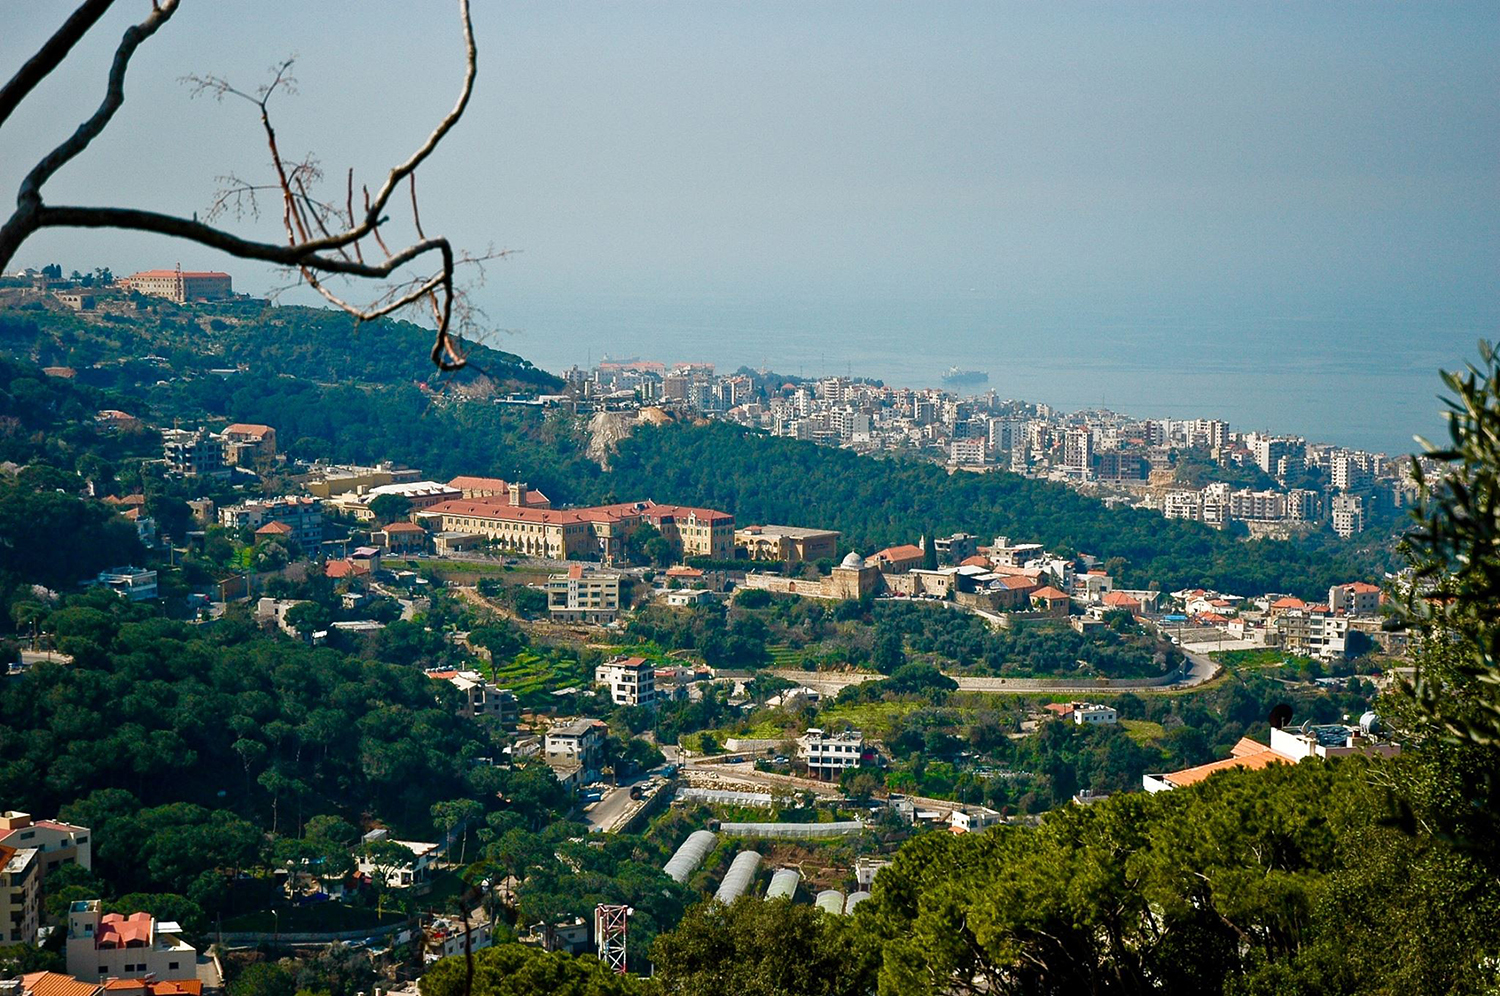 Le village d’Antoura se situe à une vingtaine de kilomètres au nord de Beyrouth, sur les hauteurs du mont-Liban. Antoura compte environ 4 000 habitants ©Municipalité d’Antoura